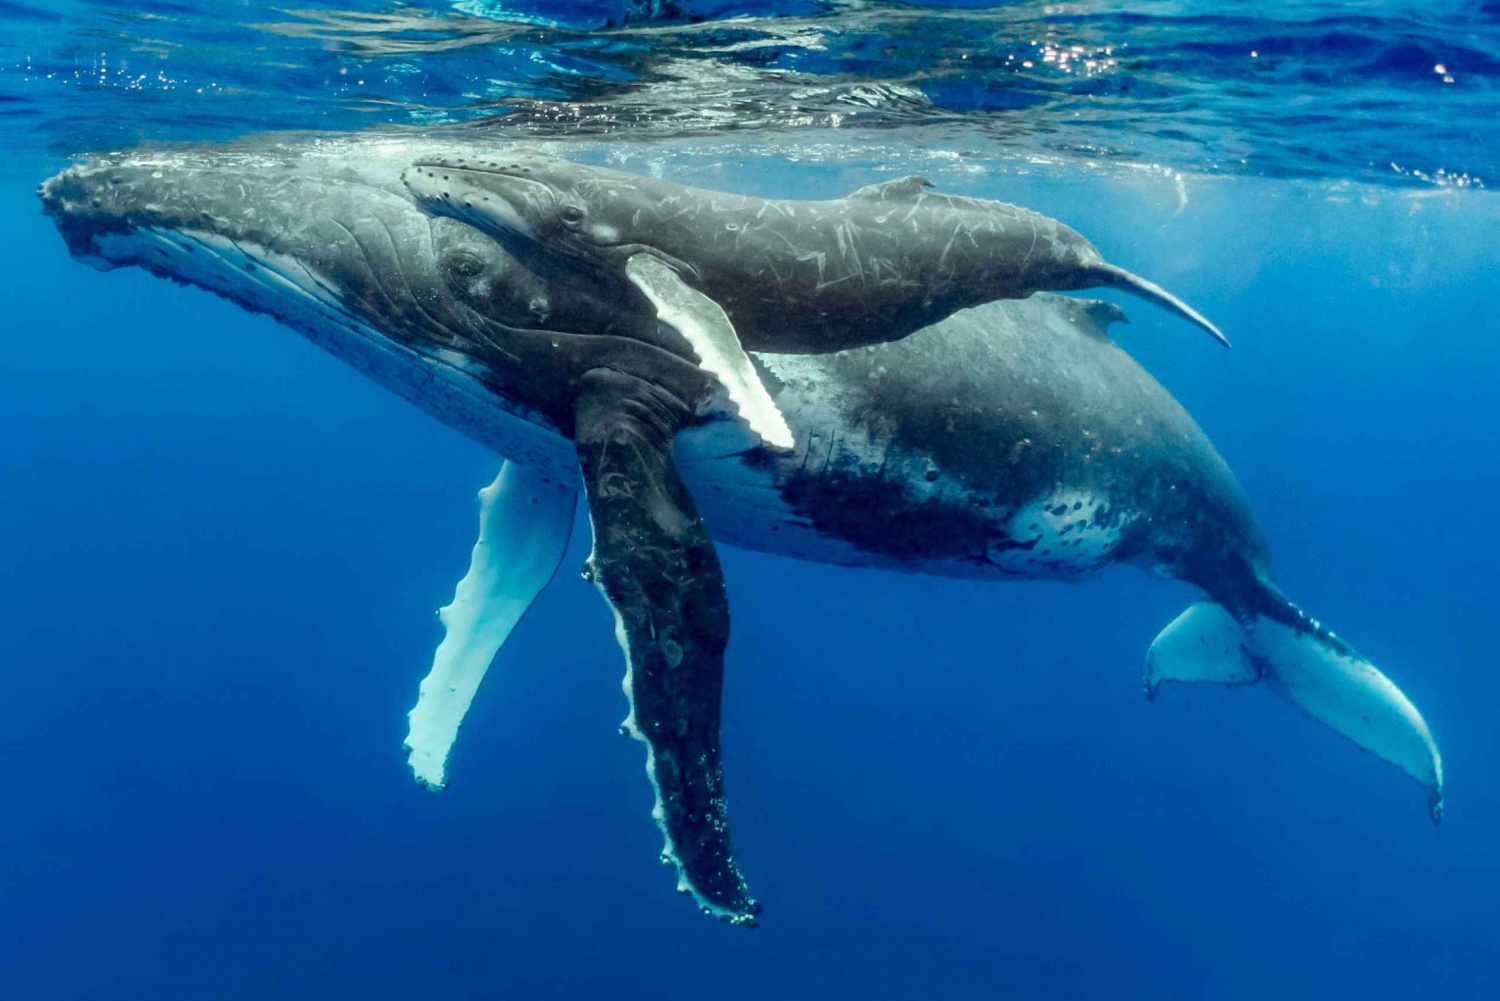 Uvita: Marino Ballena Nationaal Park Walvissen/Dolfijnen kijken